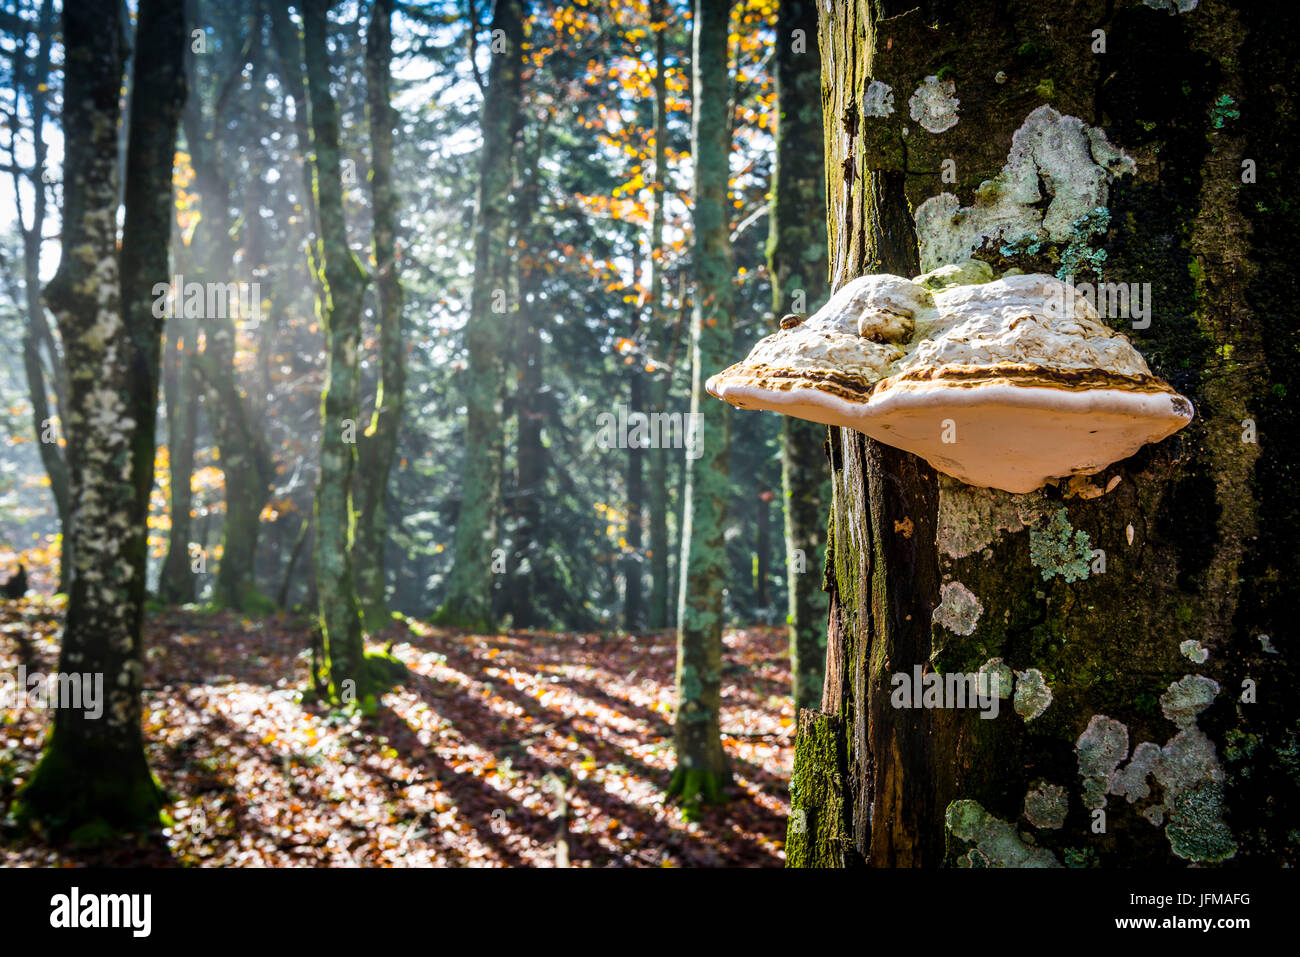 Sassofratino Reserve, Foreste Casentinesi National Park, Badia Prataglia, Tuscany, Italy, Europe, A strange mushroom attacked on the trunk, Stock Photo